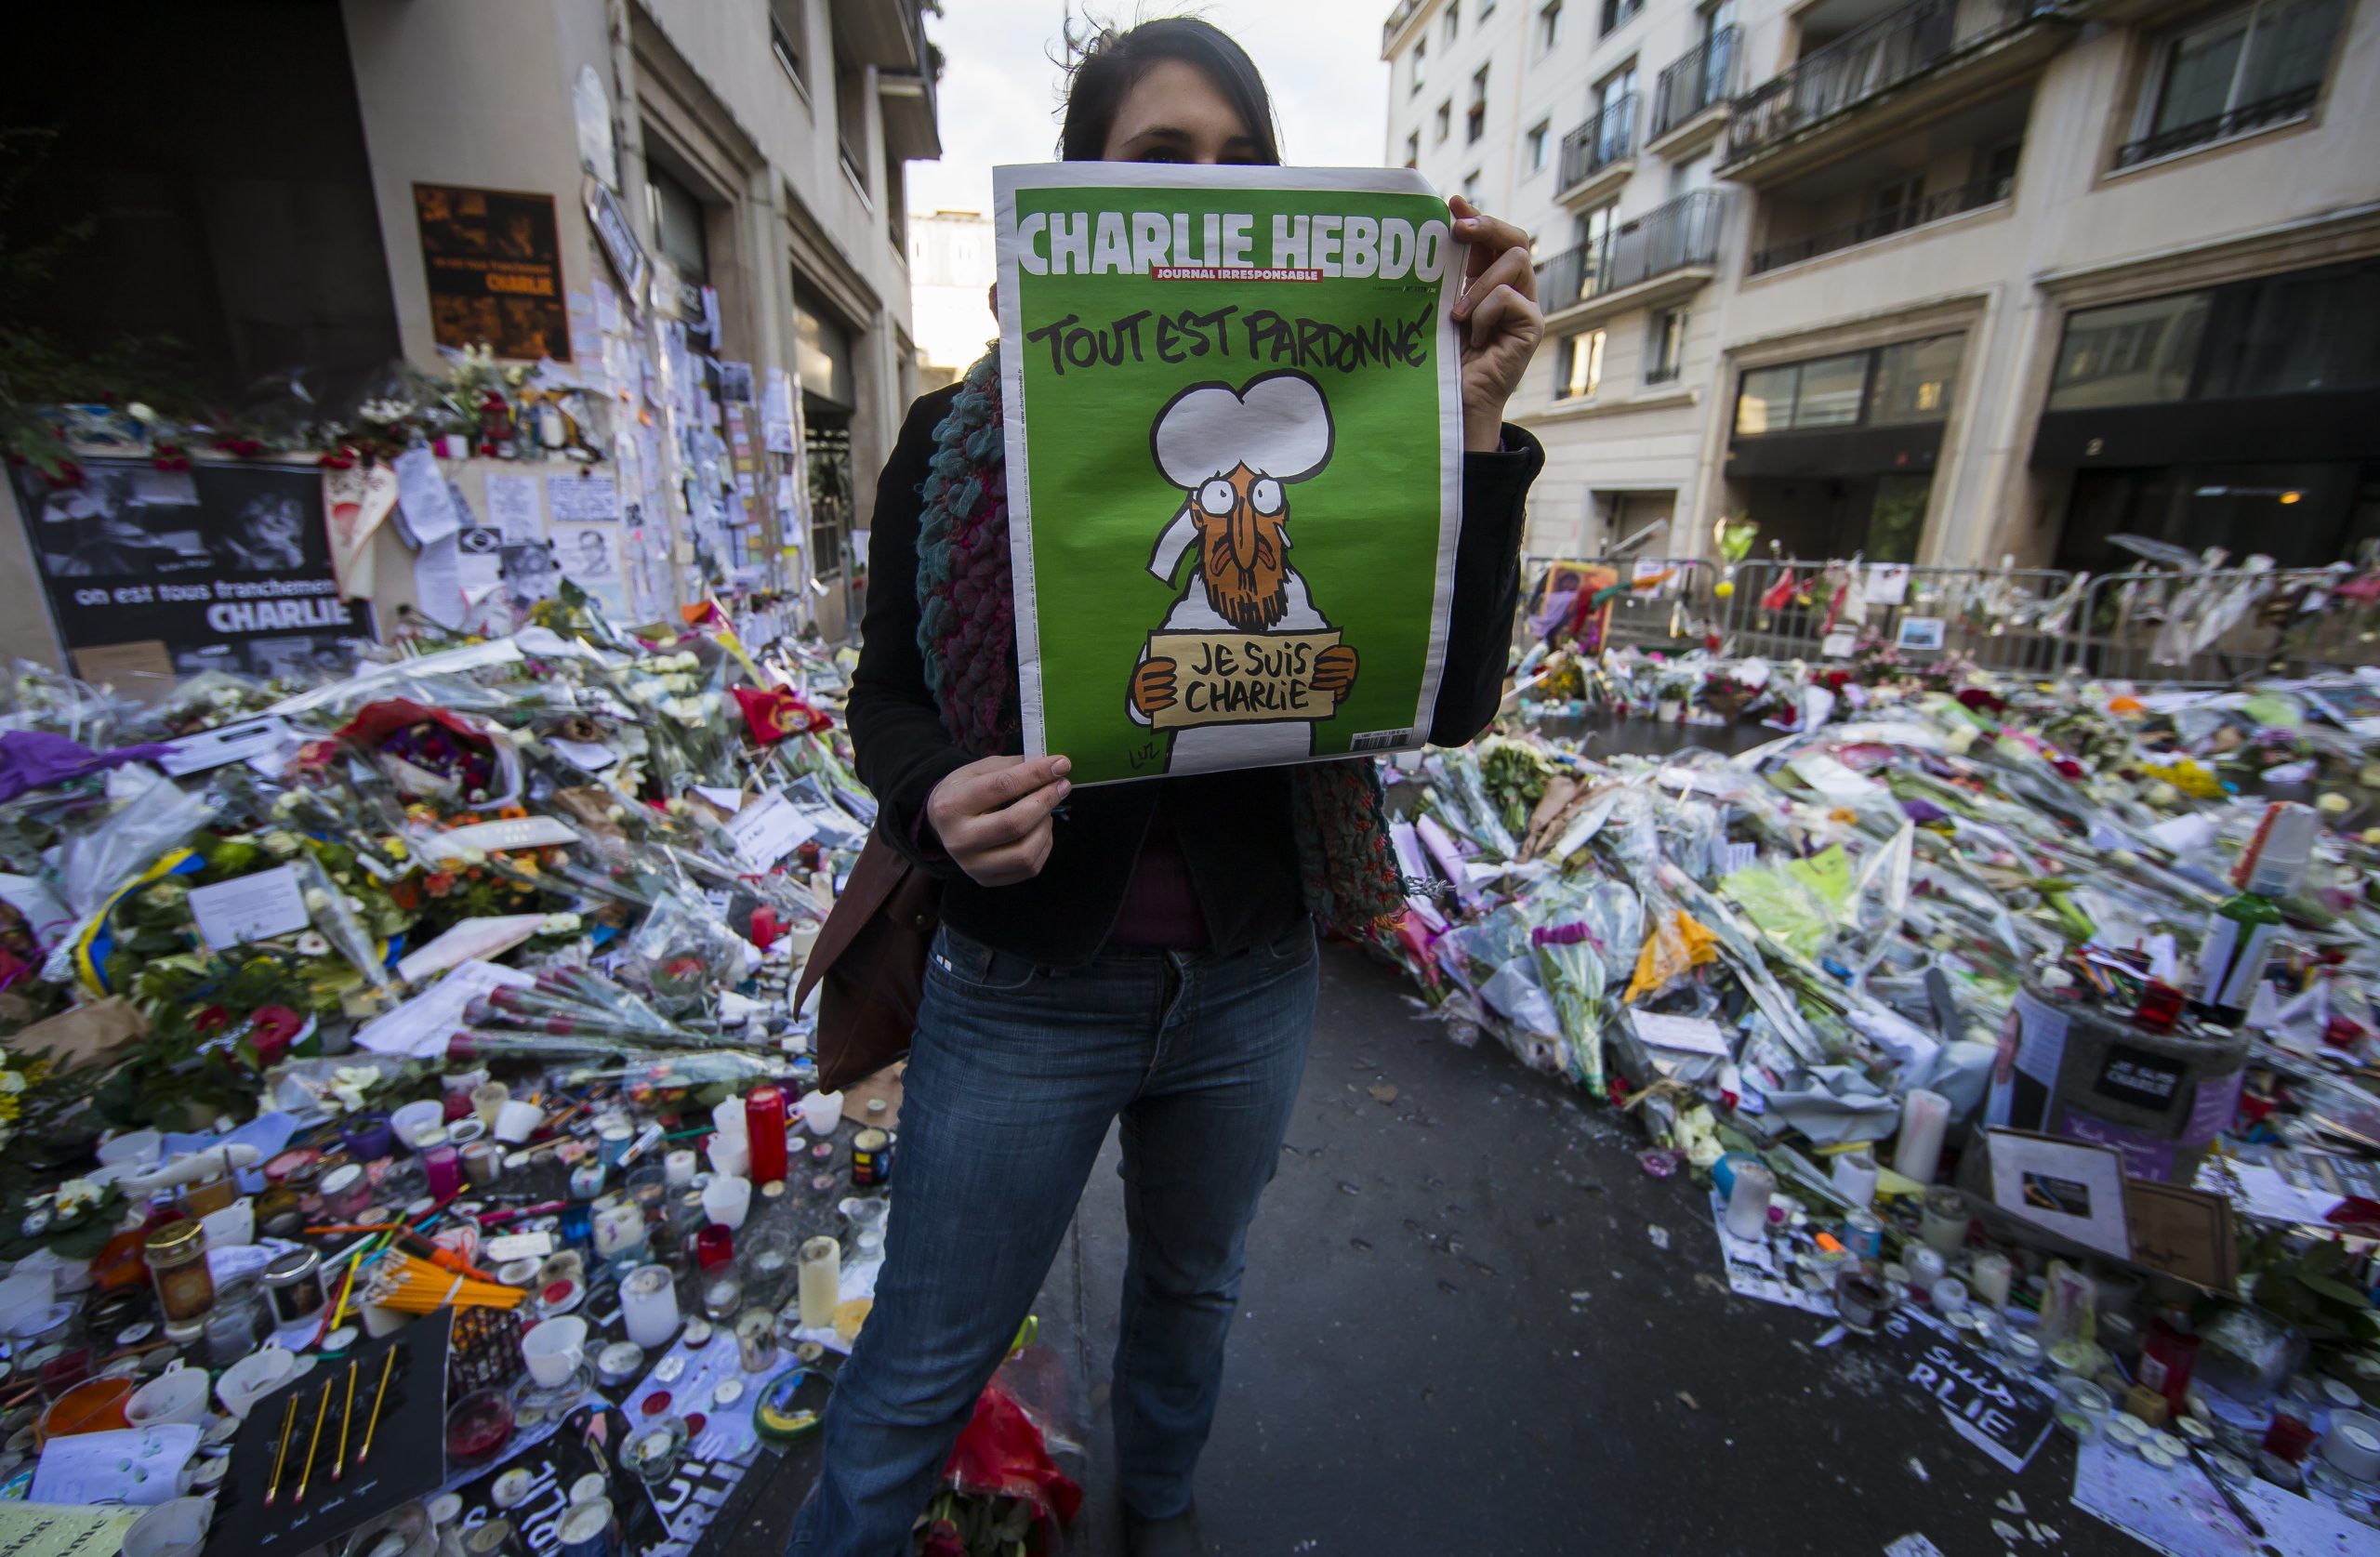 Francuski satirični list Šarli Ebdo napadnut 2015. godine reprintovao karikature Muhameda 1